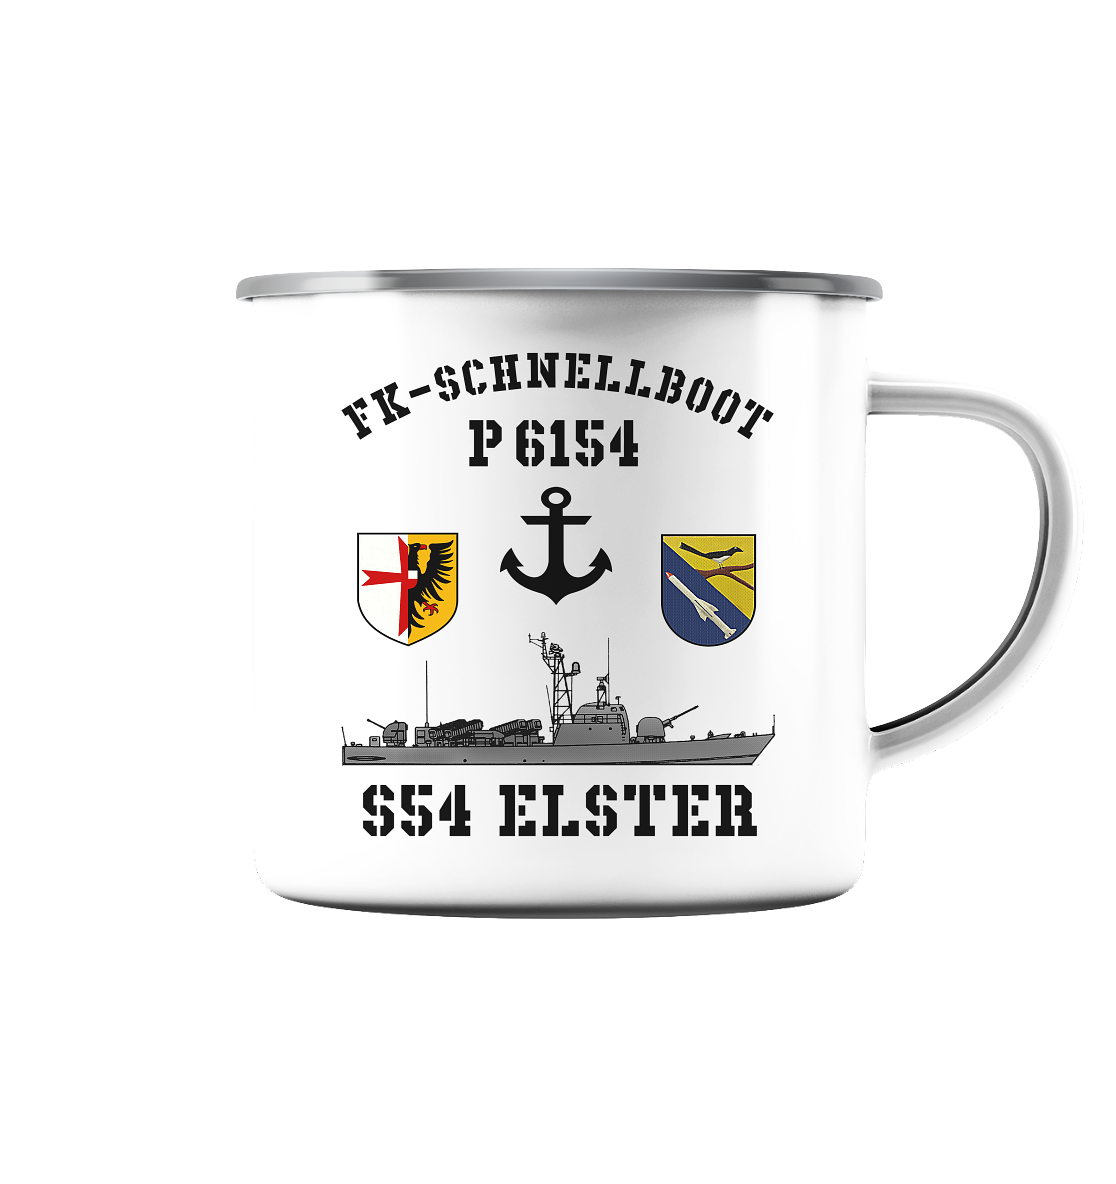 FK-Schnellboot P6154 ELSTER Anker - Emaille Tasse (Silber)